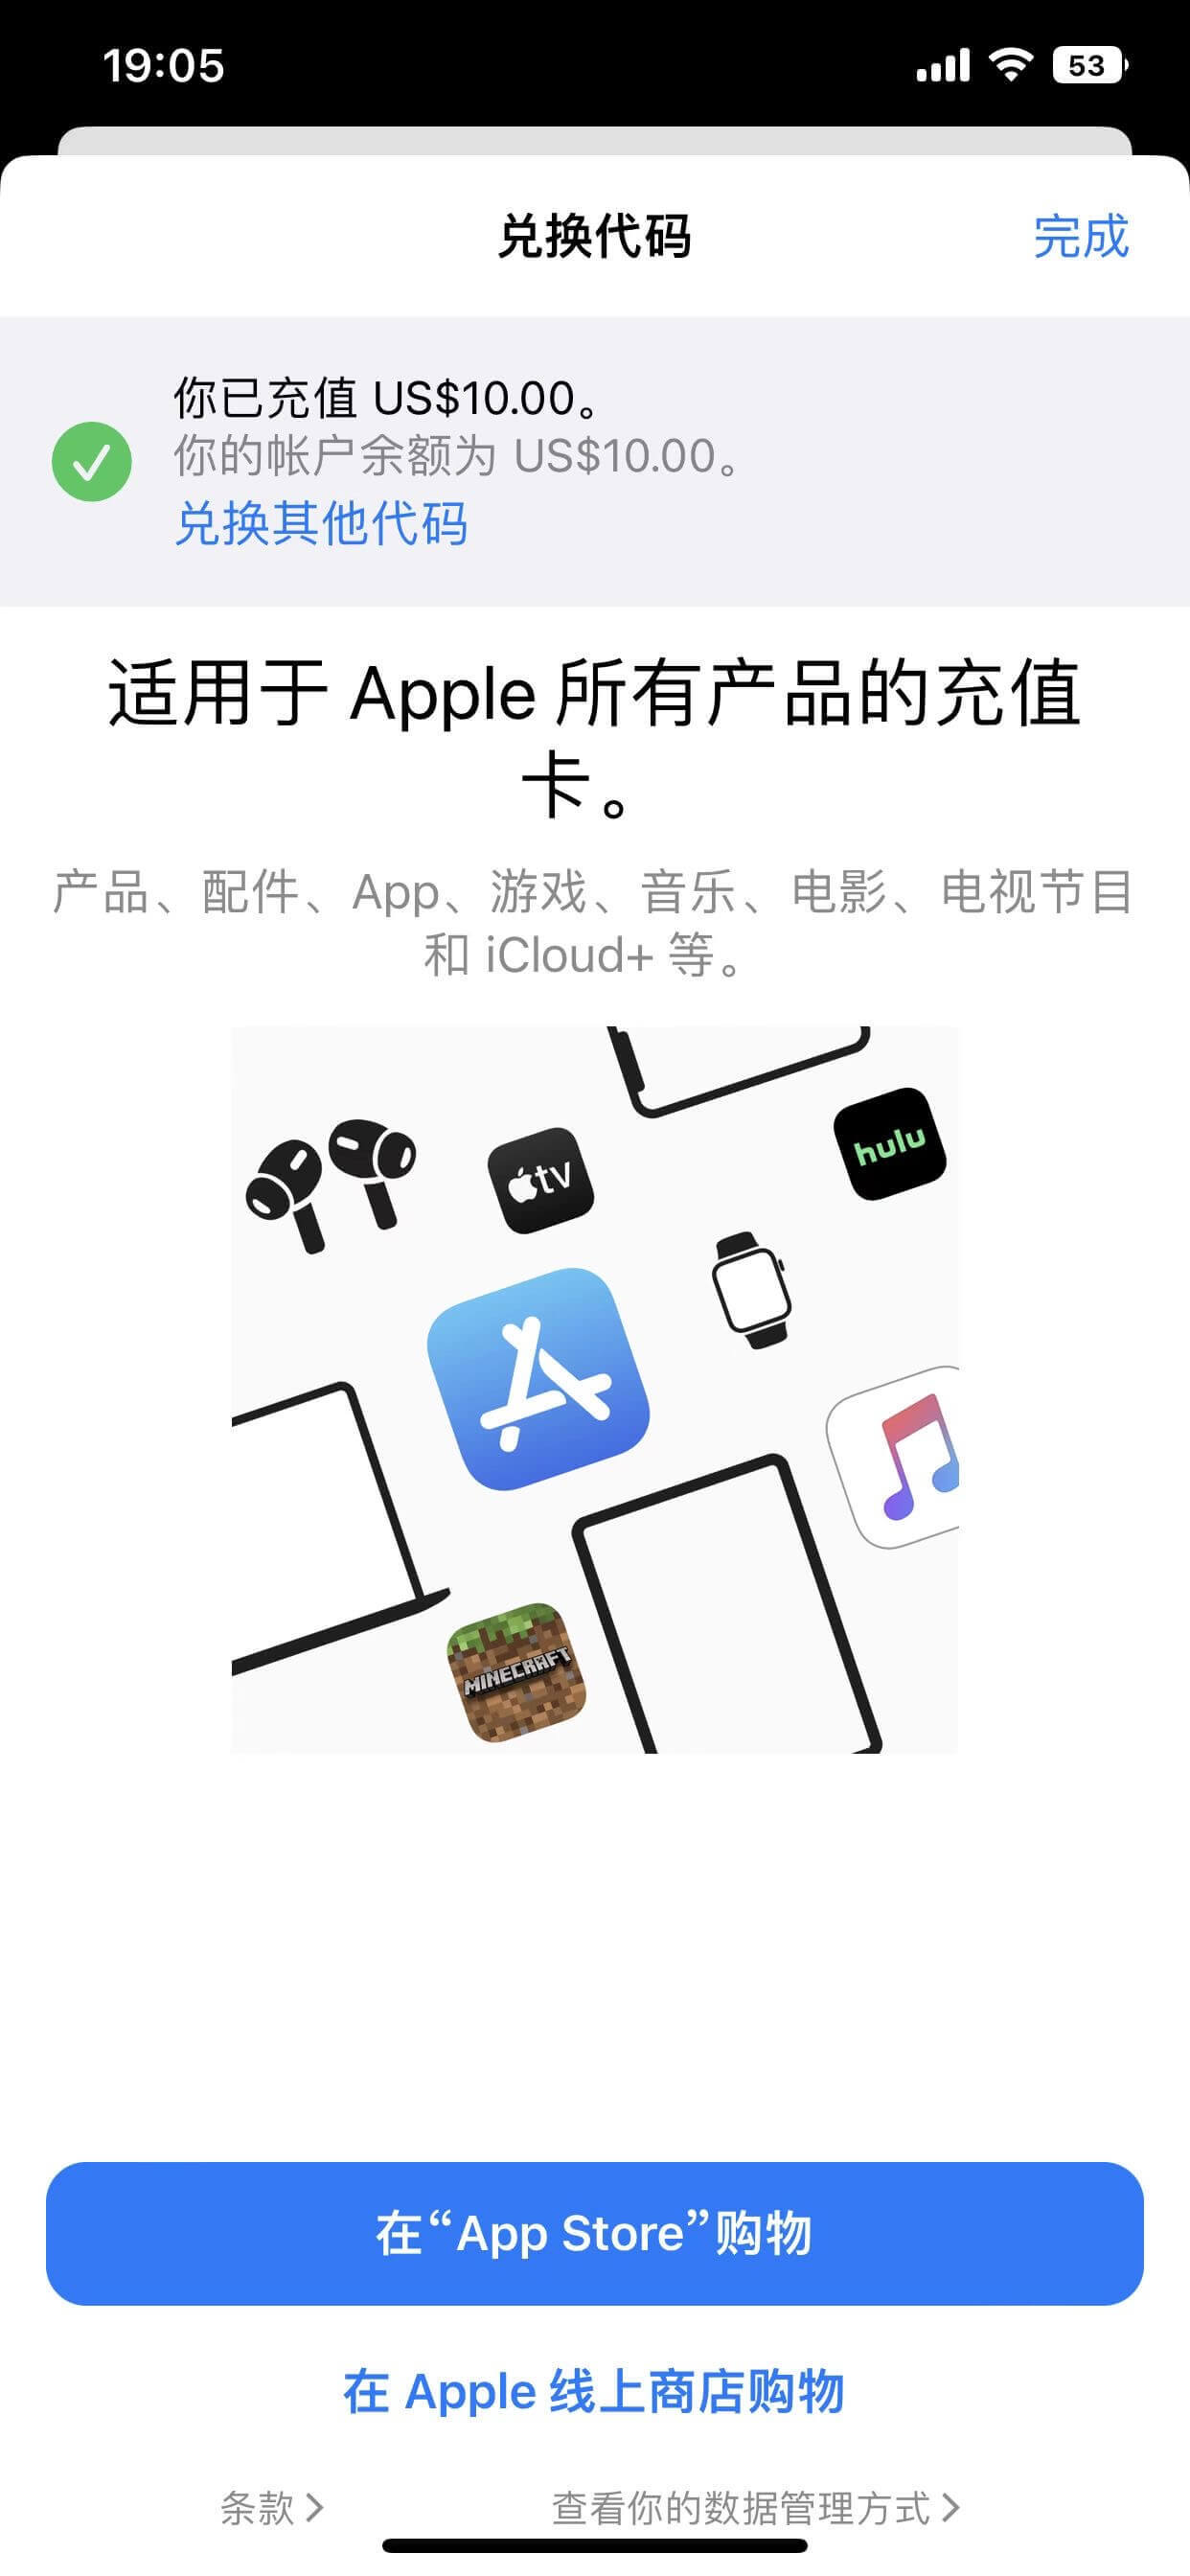 如何给美国区 Apple Id 充值，App Store 购买付费应用插图3